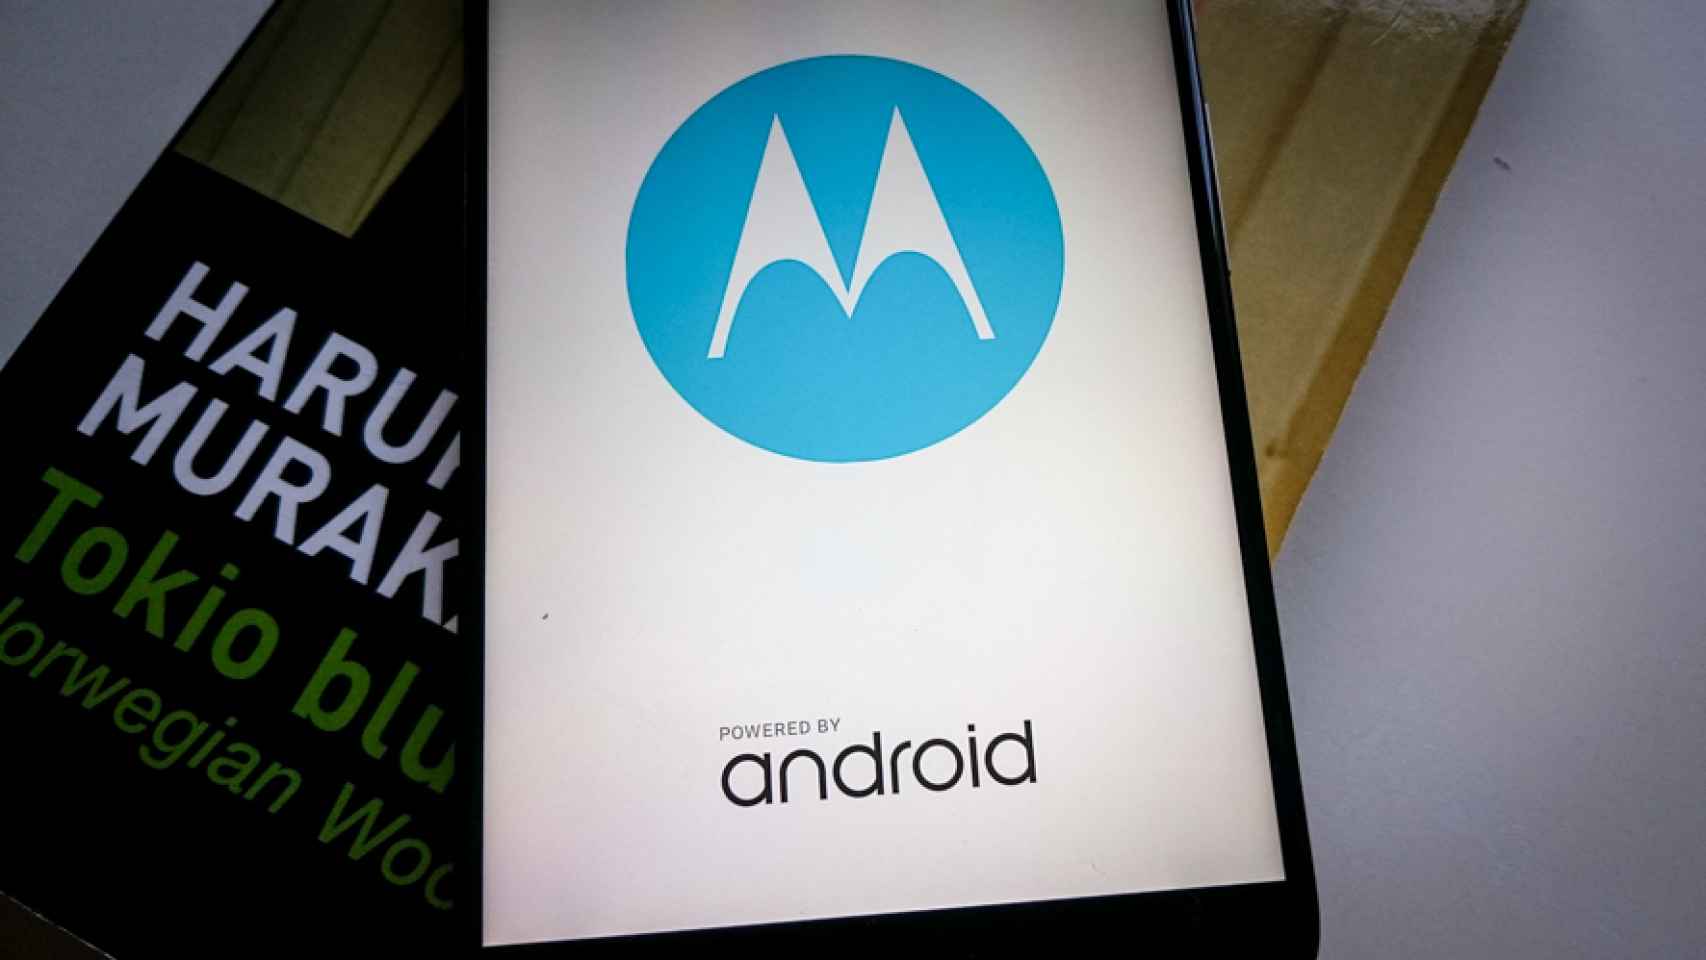 Motorola anuncia grandes cambios en 2016 para todos sus smartphones